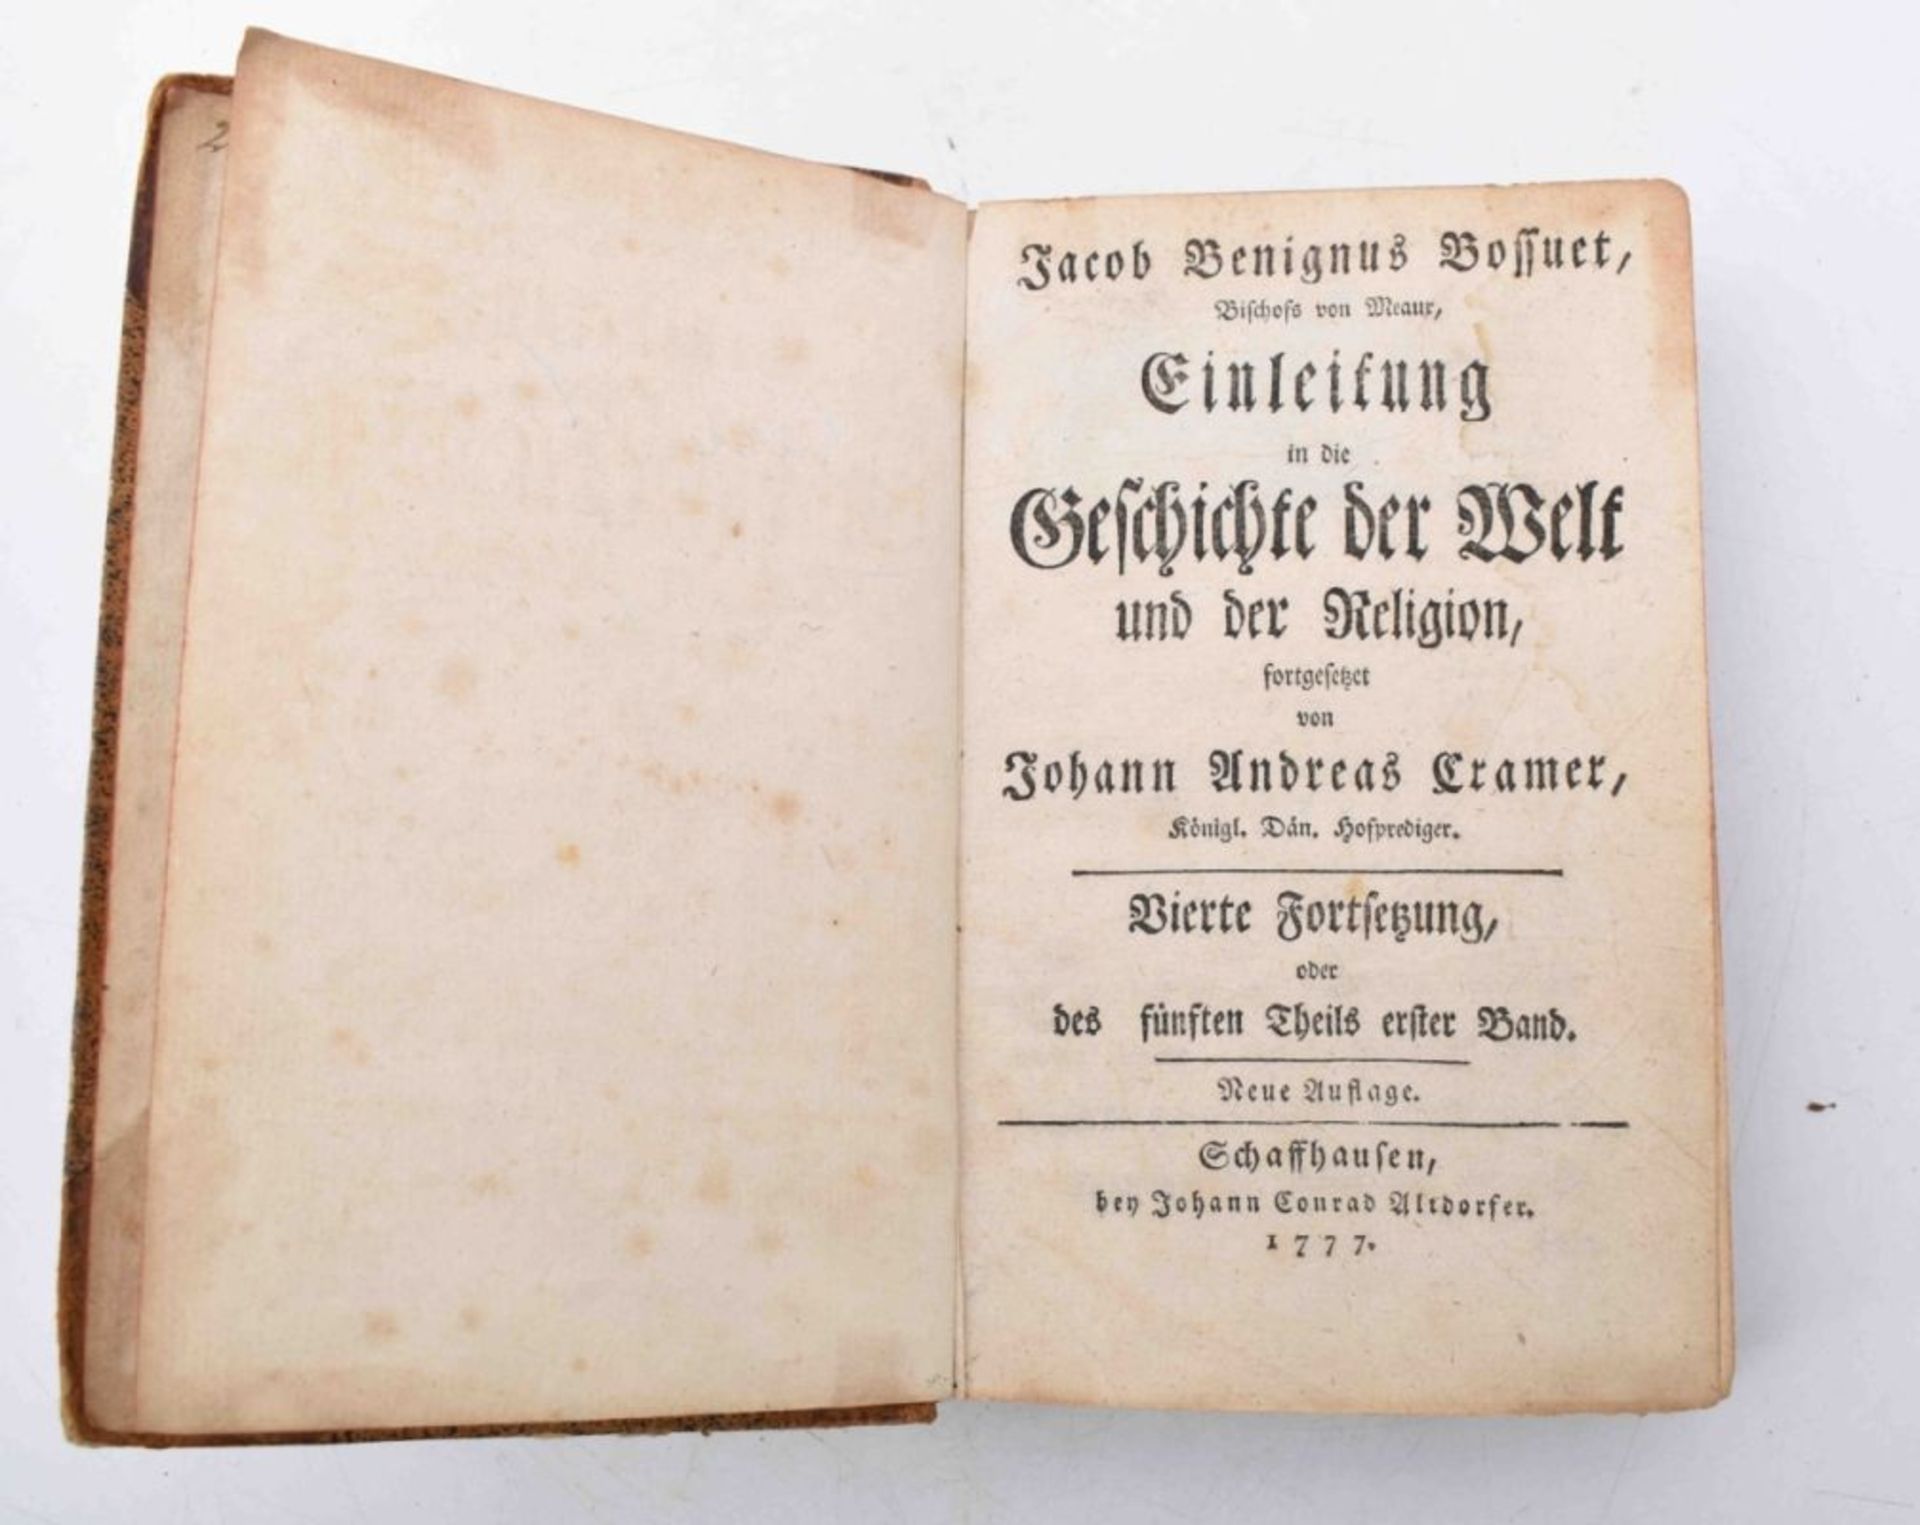 Bossuet, Jacob Benignus: Einleitung in die Geschichte der Welt und der Religion - Image 2 of 3